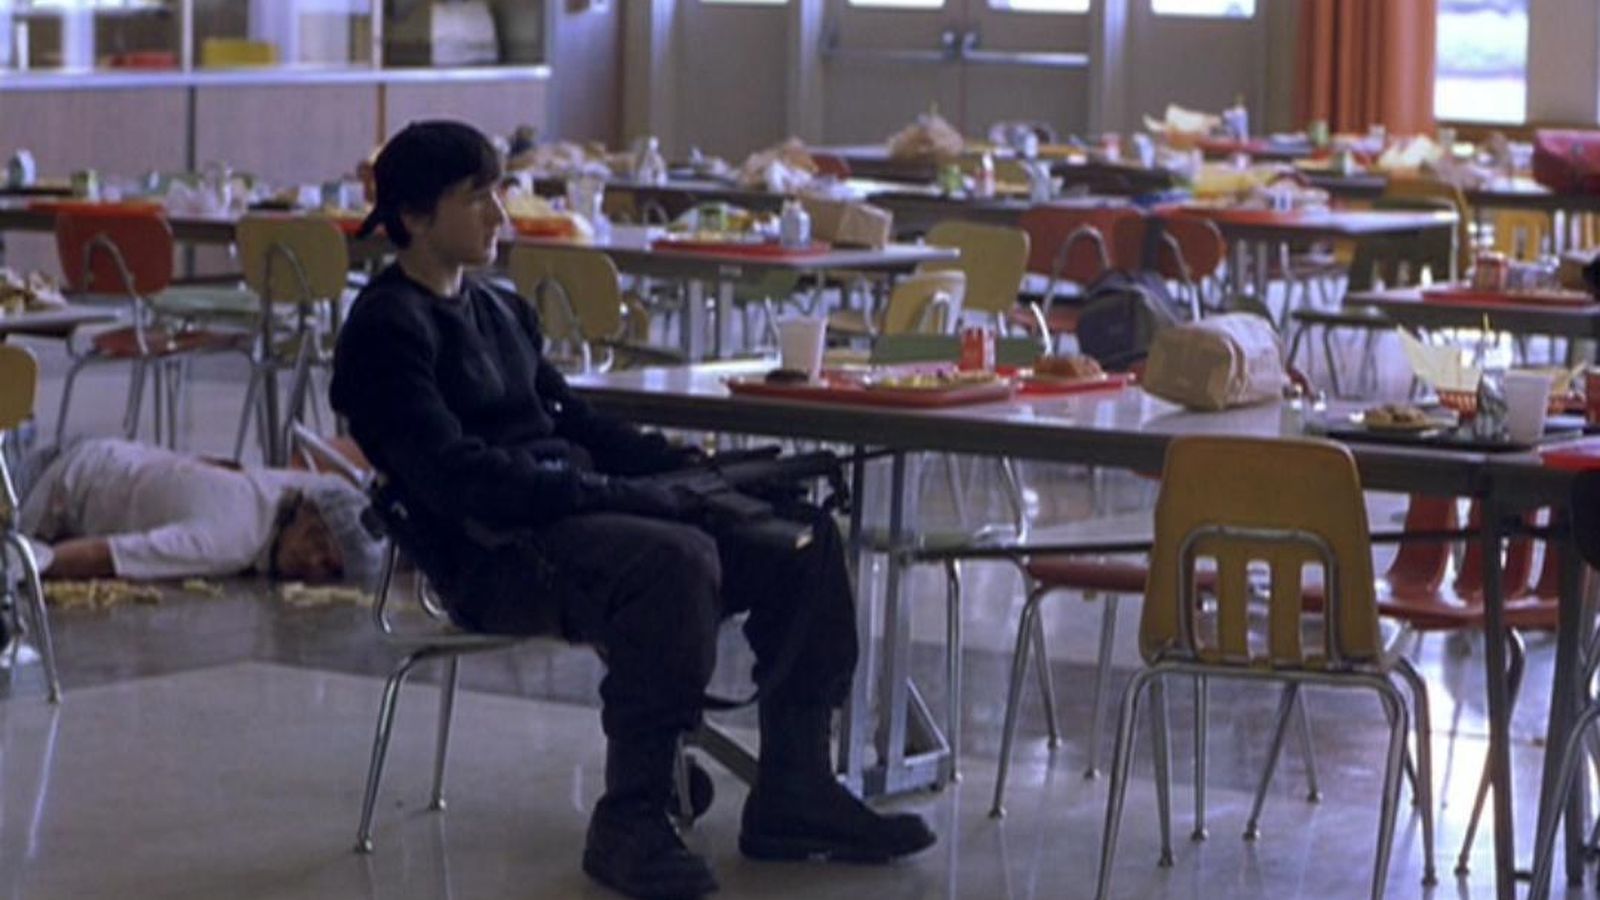 Foto: Escena de 'Elephant', película basada en la matanza en el instituto de Columbine (2003)